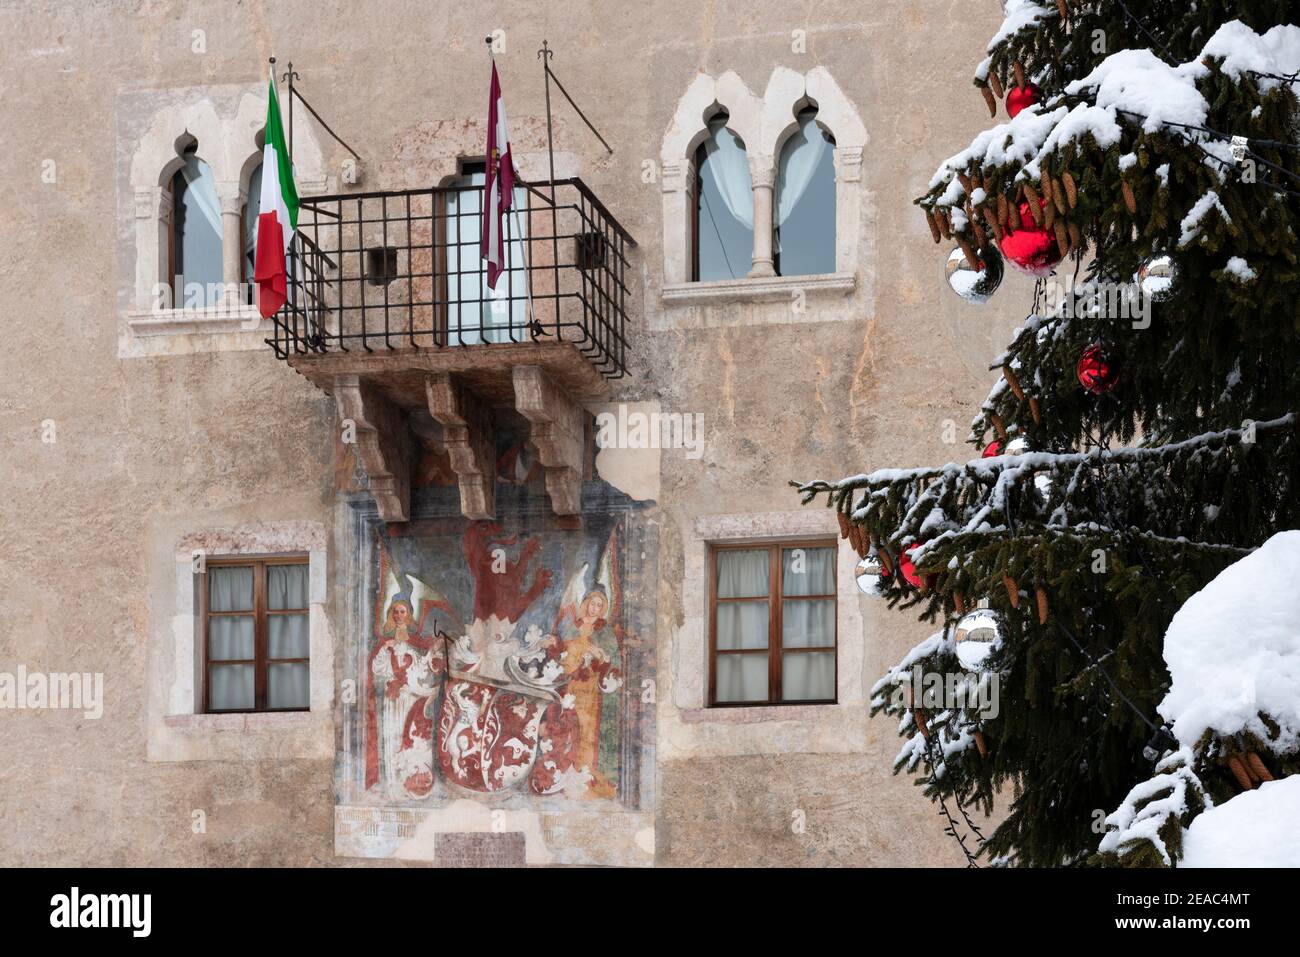 Decorazioni natalizie di Cles. Europa, Italia, Trentino Alto Adige, Val di non, Cles Foto Stock